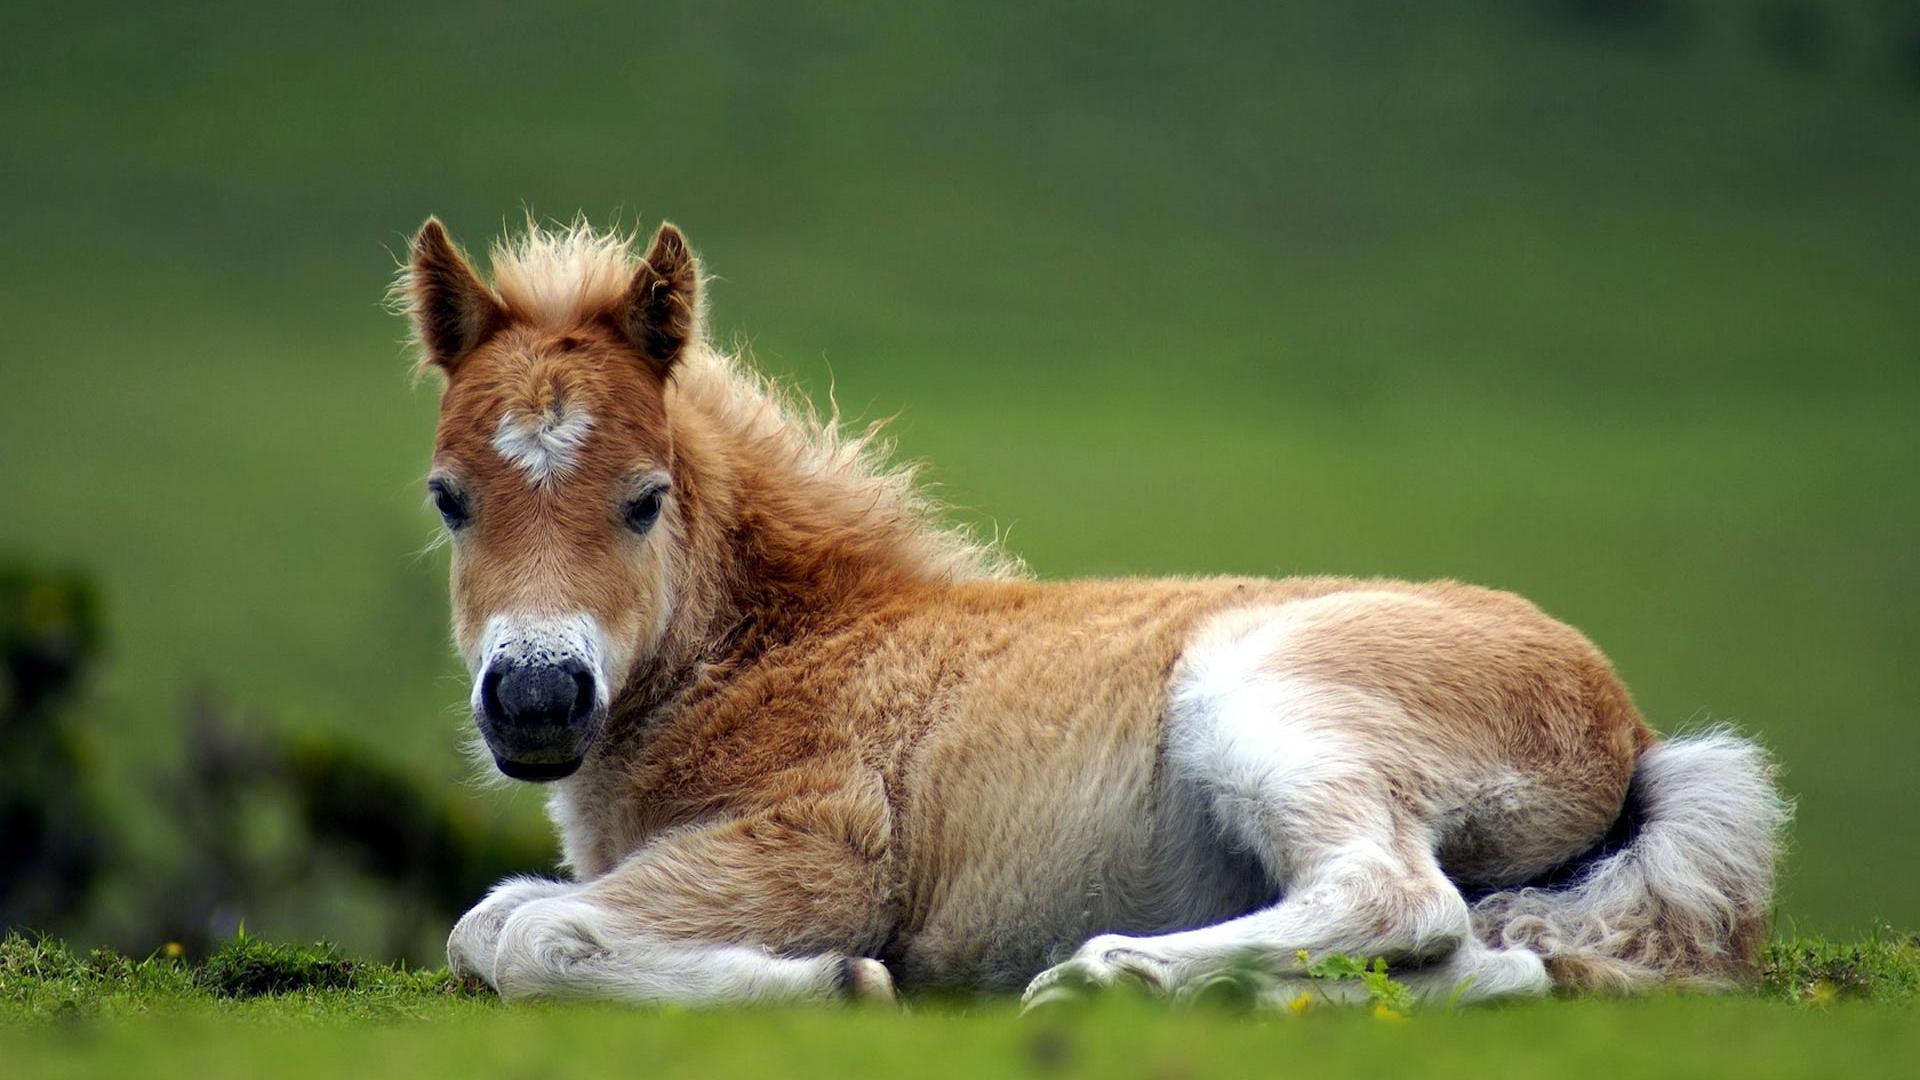 Cute Horse Of HD Wallpaper